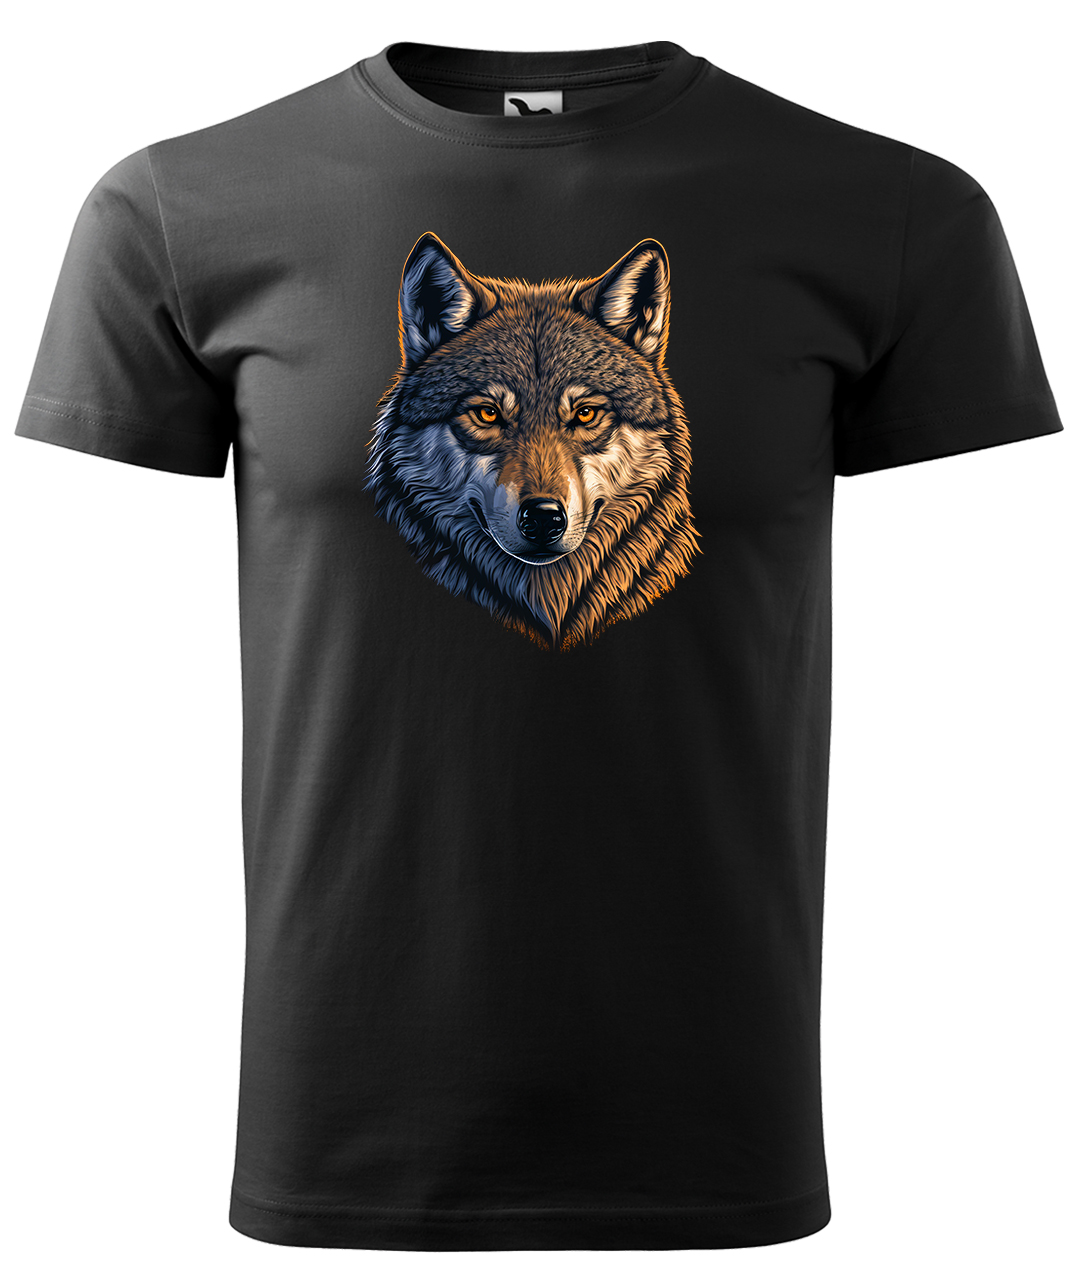 Dětské tričko s vlkem - Hlava vlka Velikost: 4 roky / 110 cm, Barva: Černá (01), Délka rukávu: Krátký rukáv